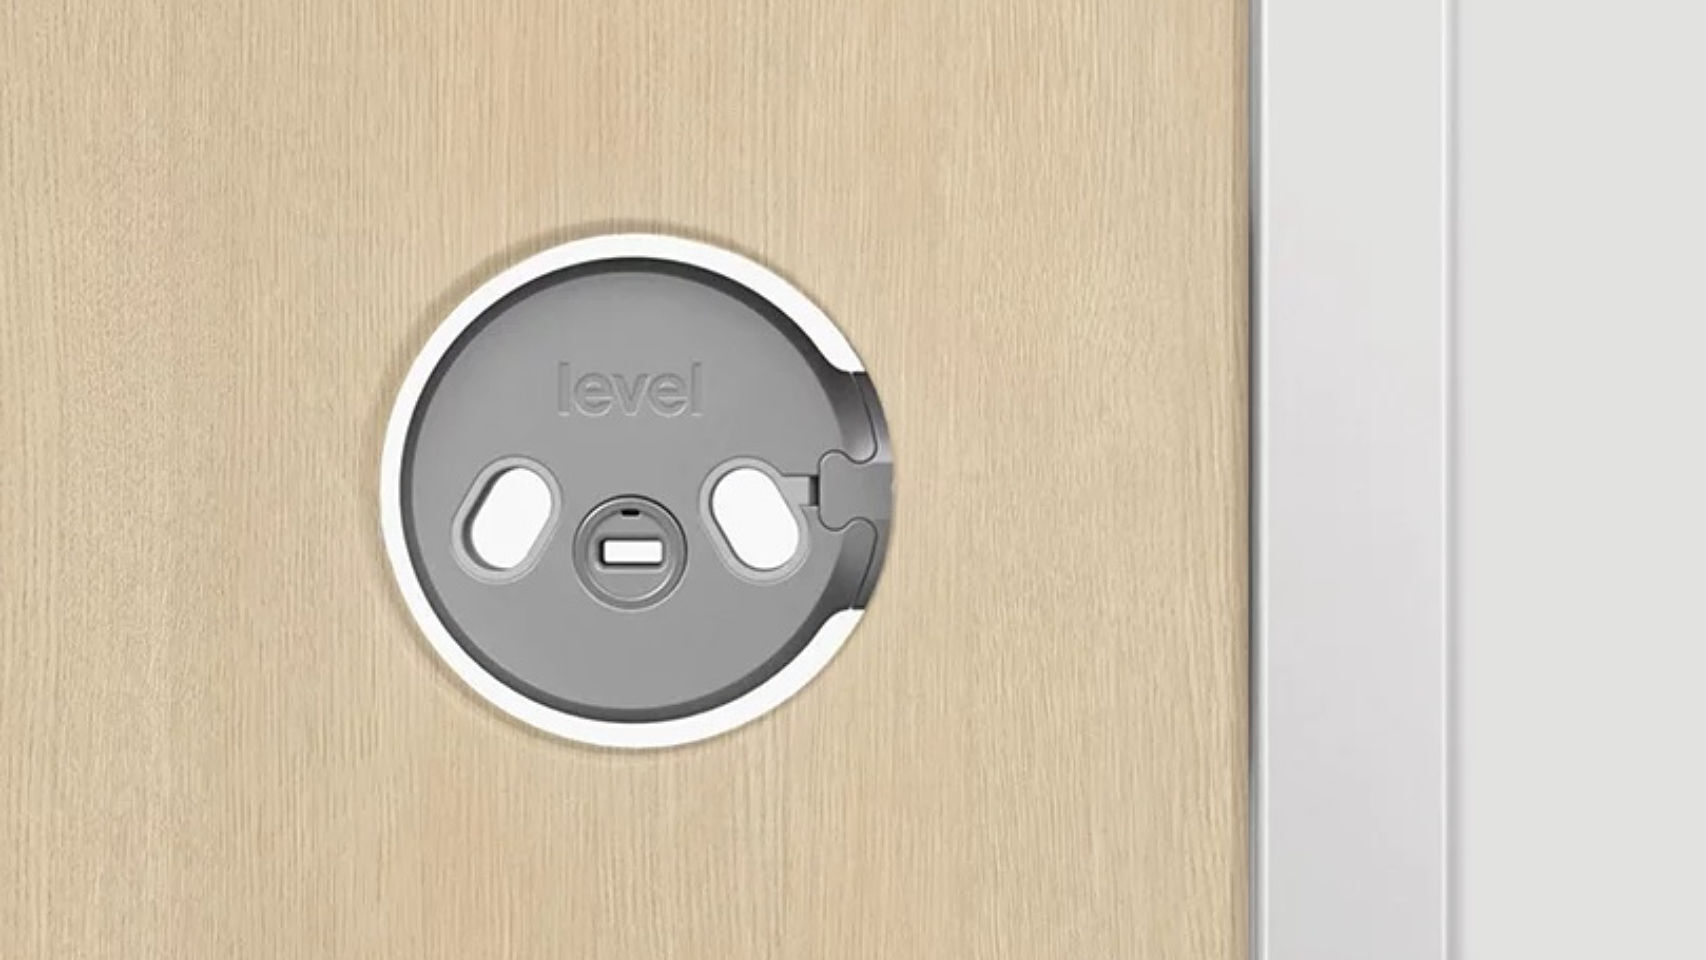 Confiarías en una cerradura inteligente? Probamos la Nuki Smart Lock 2.0